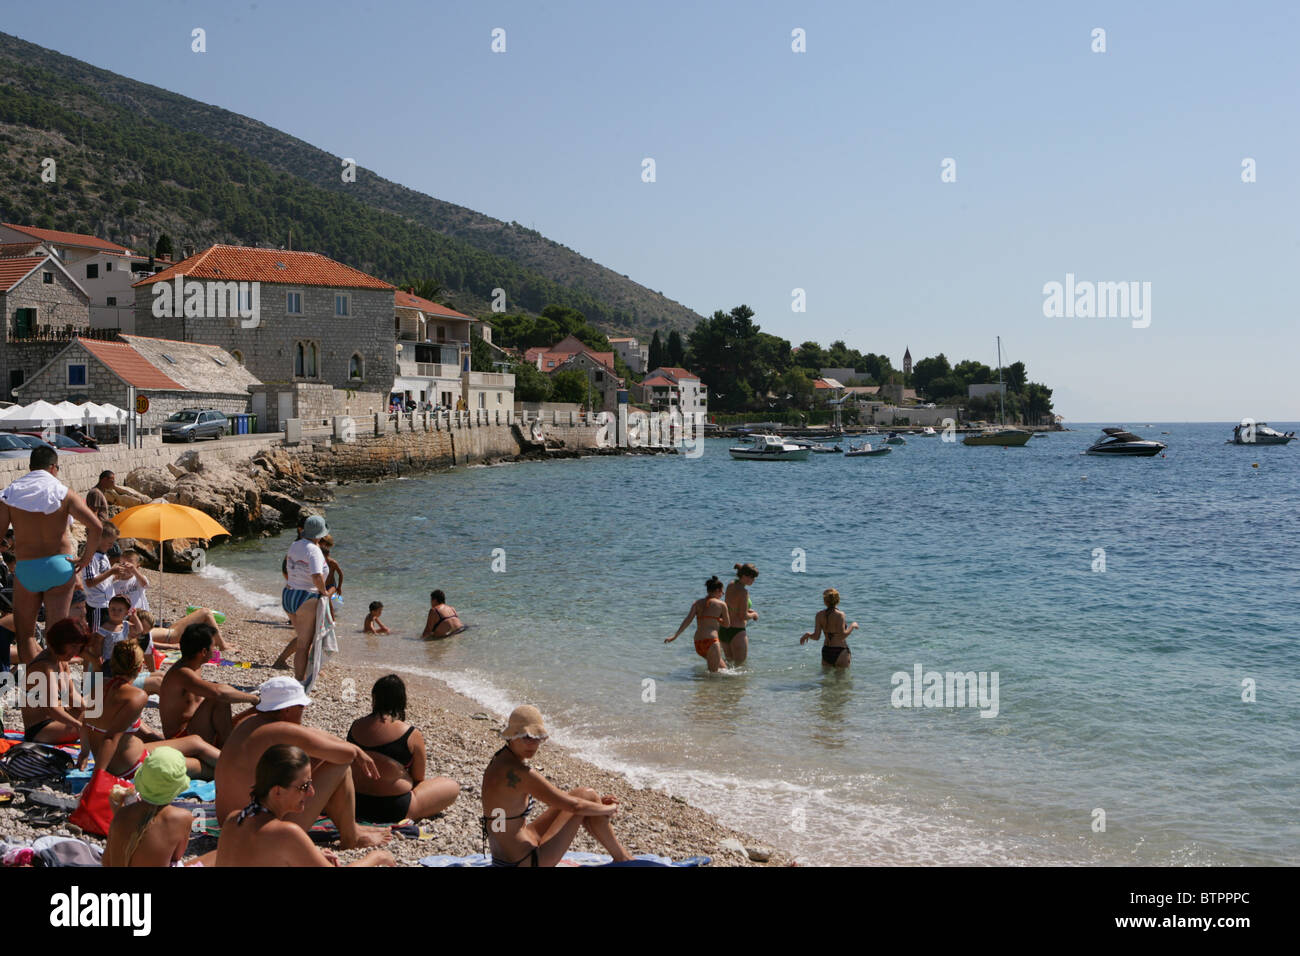 Les gens s'amusent sur la plage dans le port de Bol, sur l'île de Brac, Croatie Banque D'Images